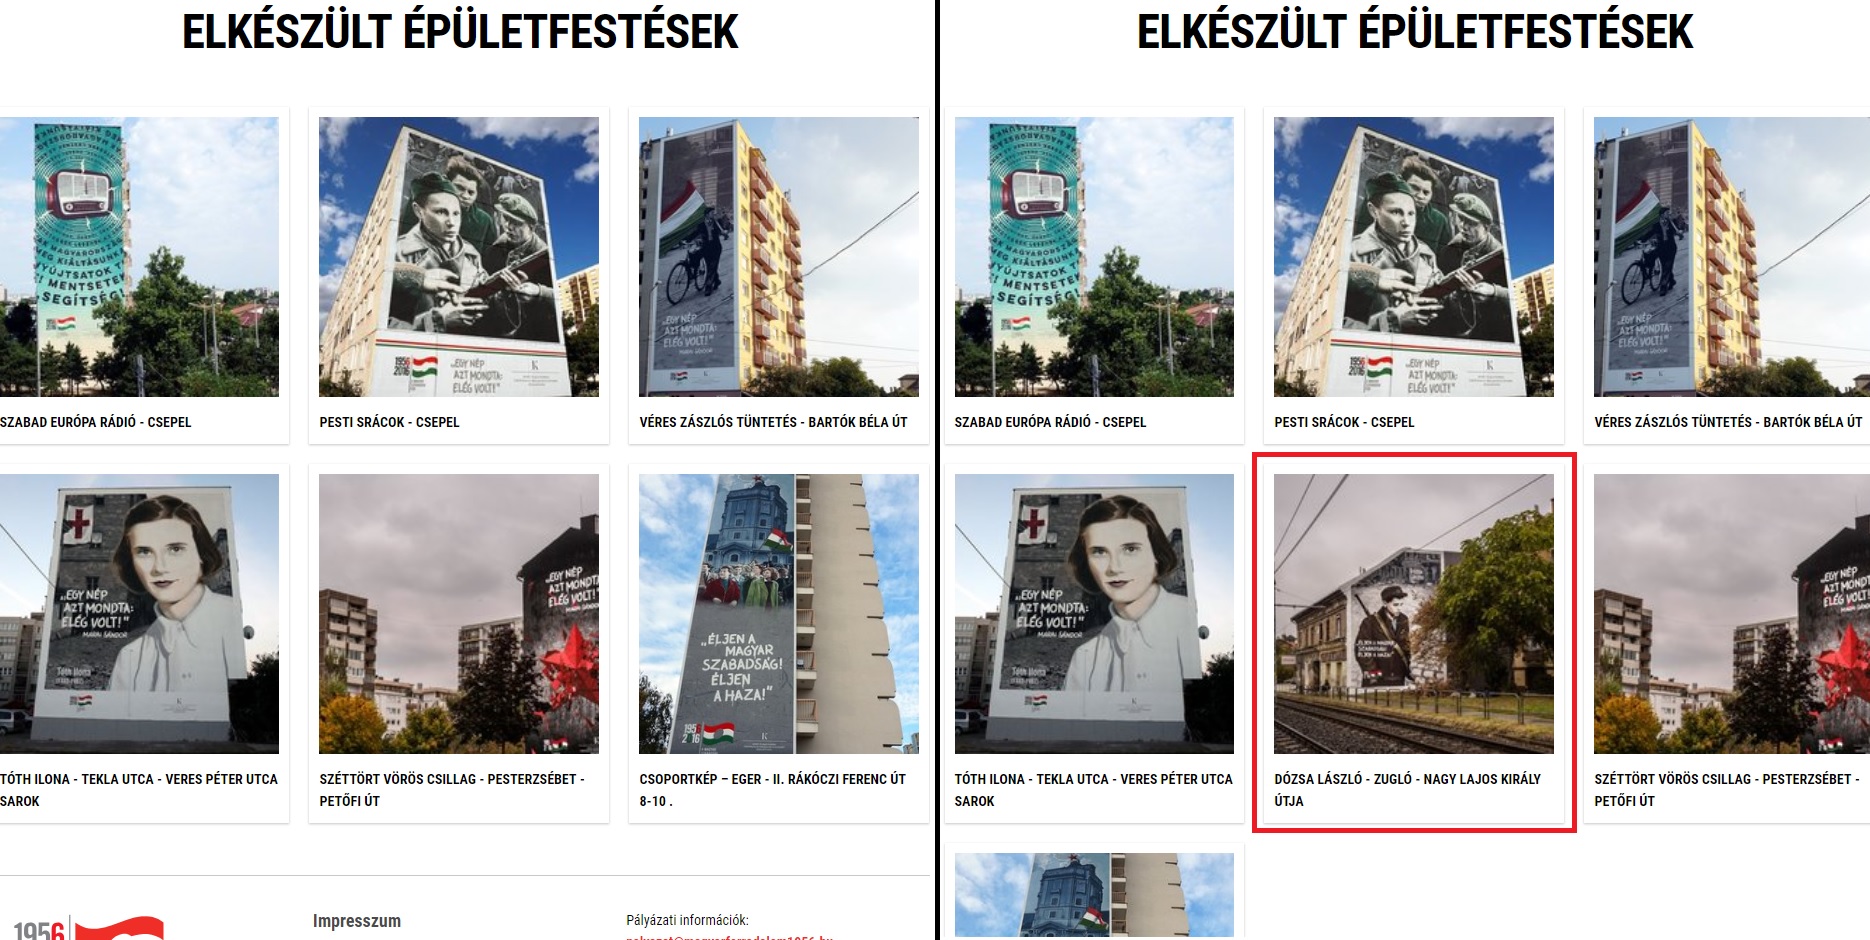 Balra az elkészült épületfestések a magyarforradalom56.hu-n most, jobbra 2017-ben. Látszik, hogy a „Dózsa Lászlót” ábrázoló festményt leszedték a honlapról.